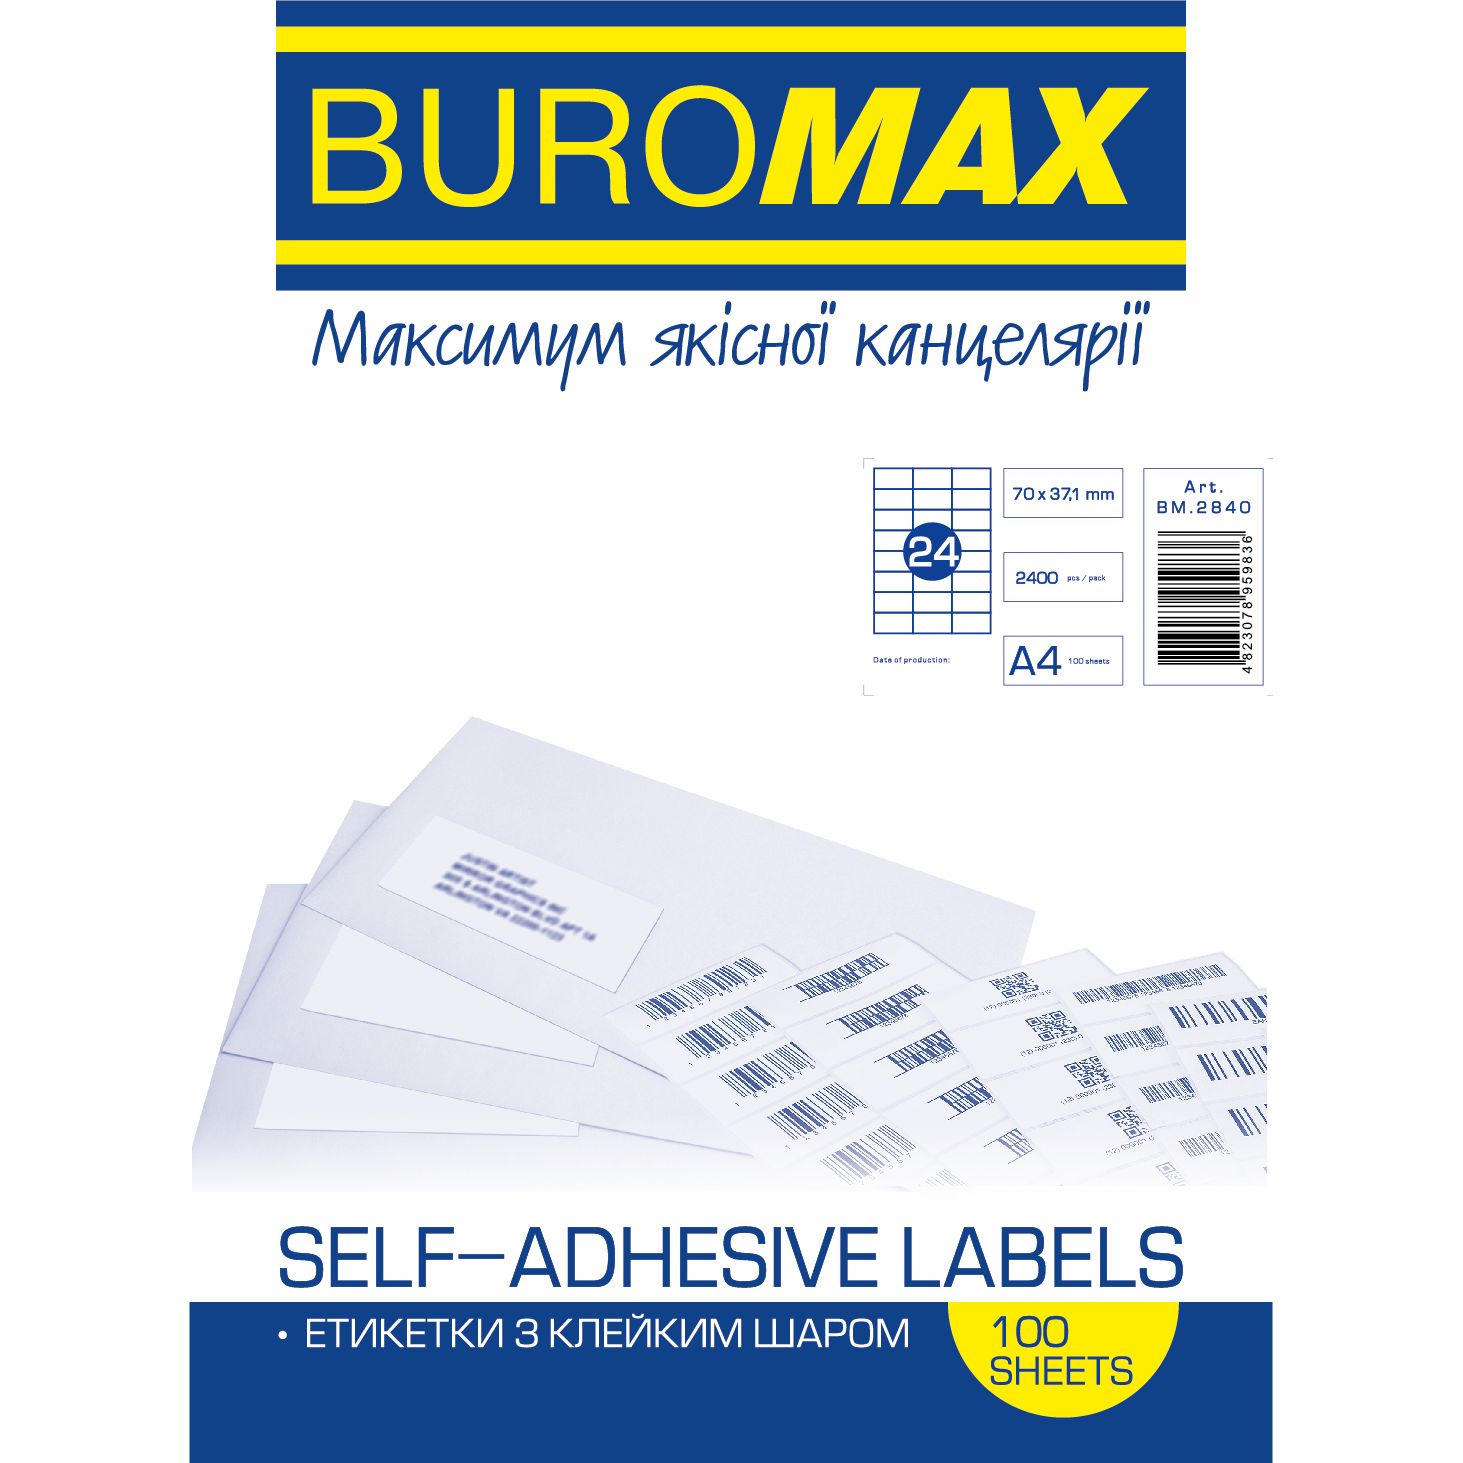 Етикетки самоклейні Buromax 70х37.1 мм 100 шт. (BM.2840) - фото 1